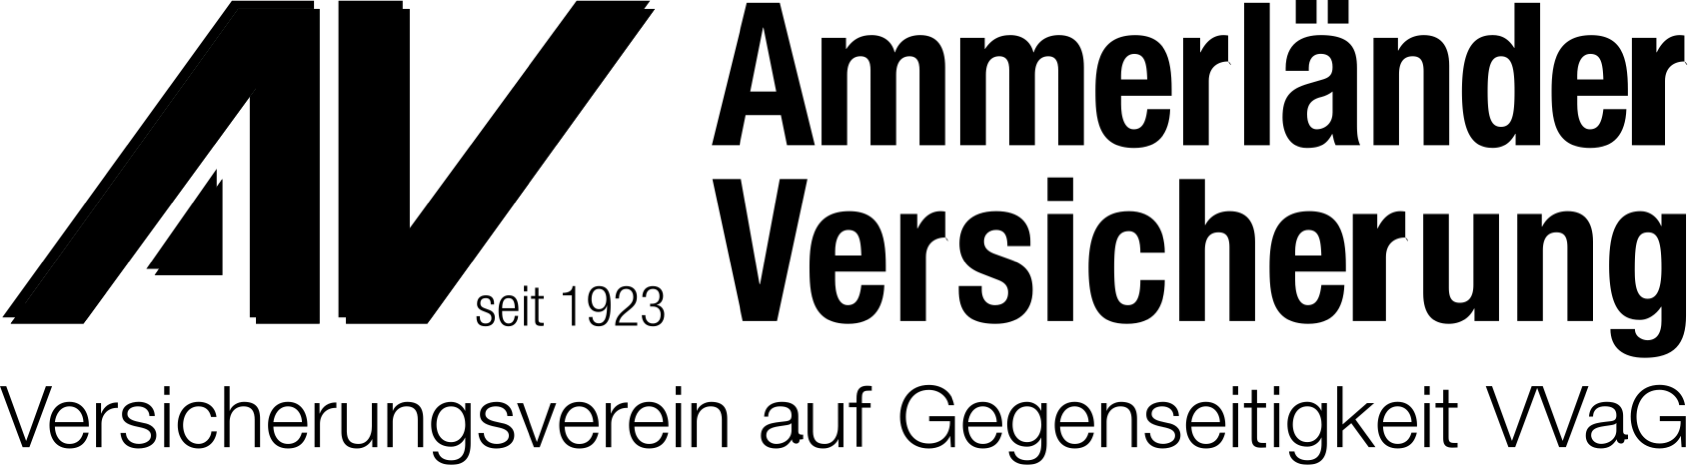 Av-Logo+Vektordatei 1